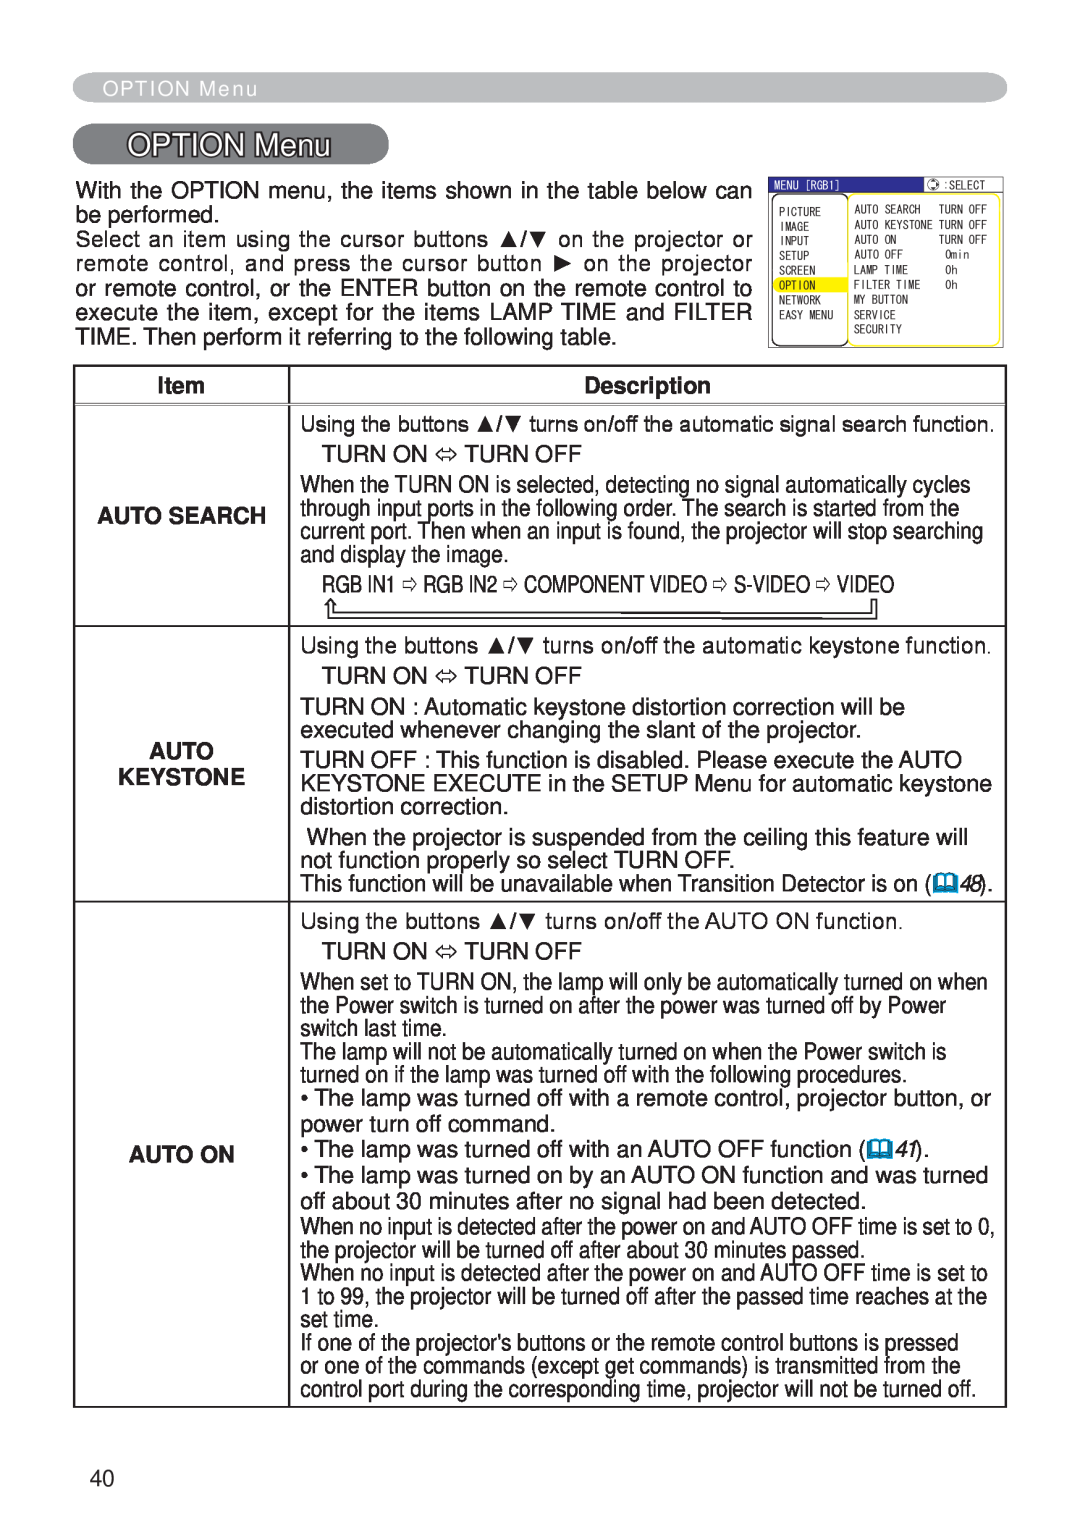 Hitachi CP-X265 user manual OPTION Menu, Description, Auto Search, Keystone, Auto On 